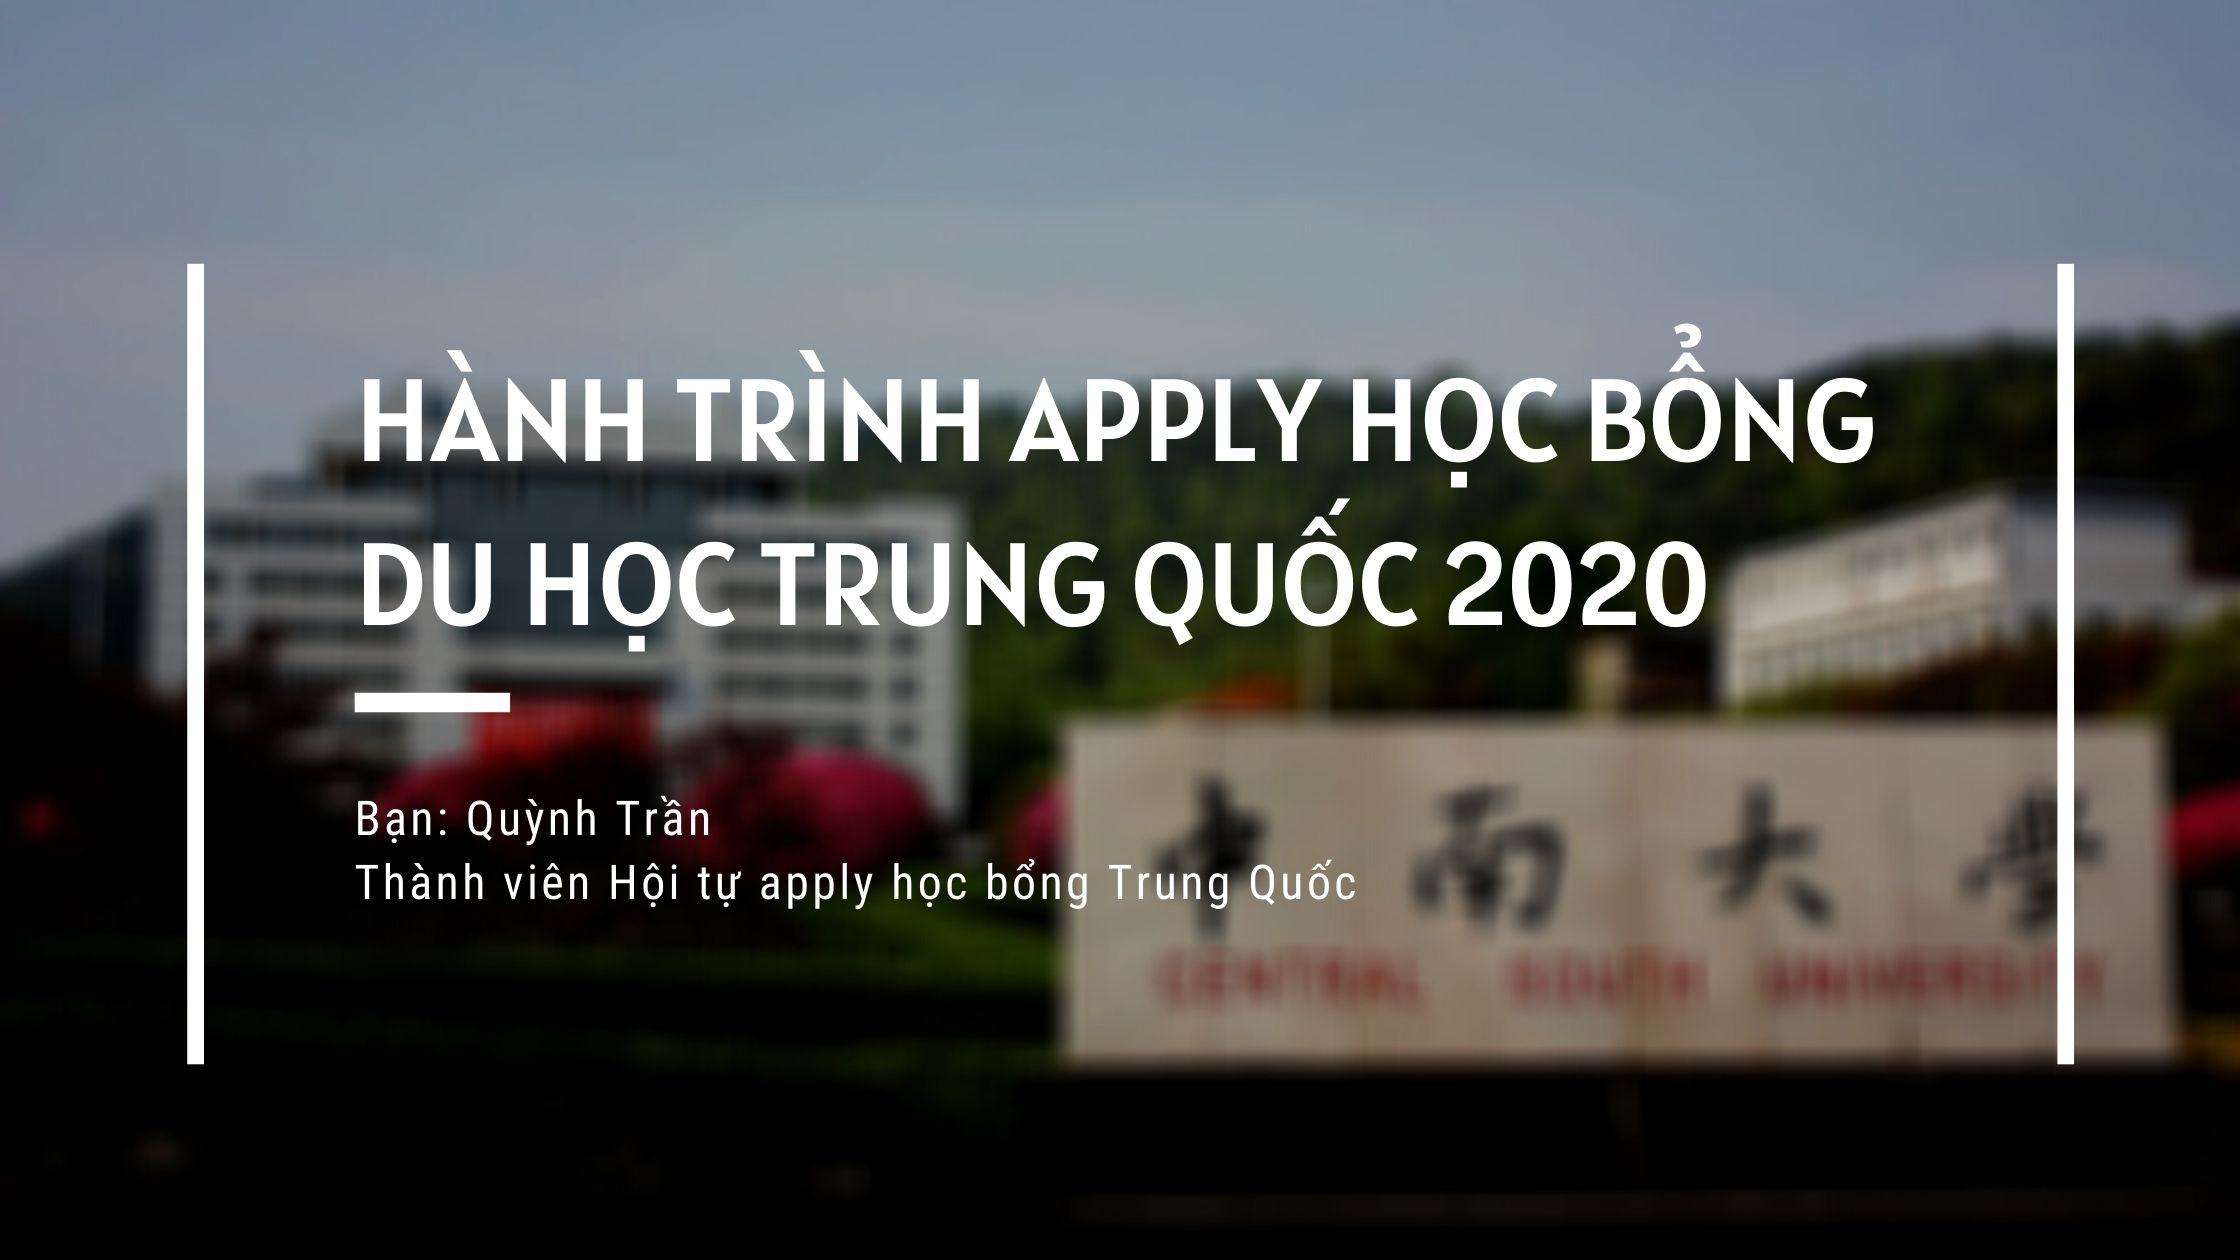 Hành trình đạt 5 học bổng – Vinh danh người thắng cuộc 2020 – Quỳnh Trần